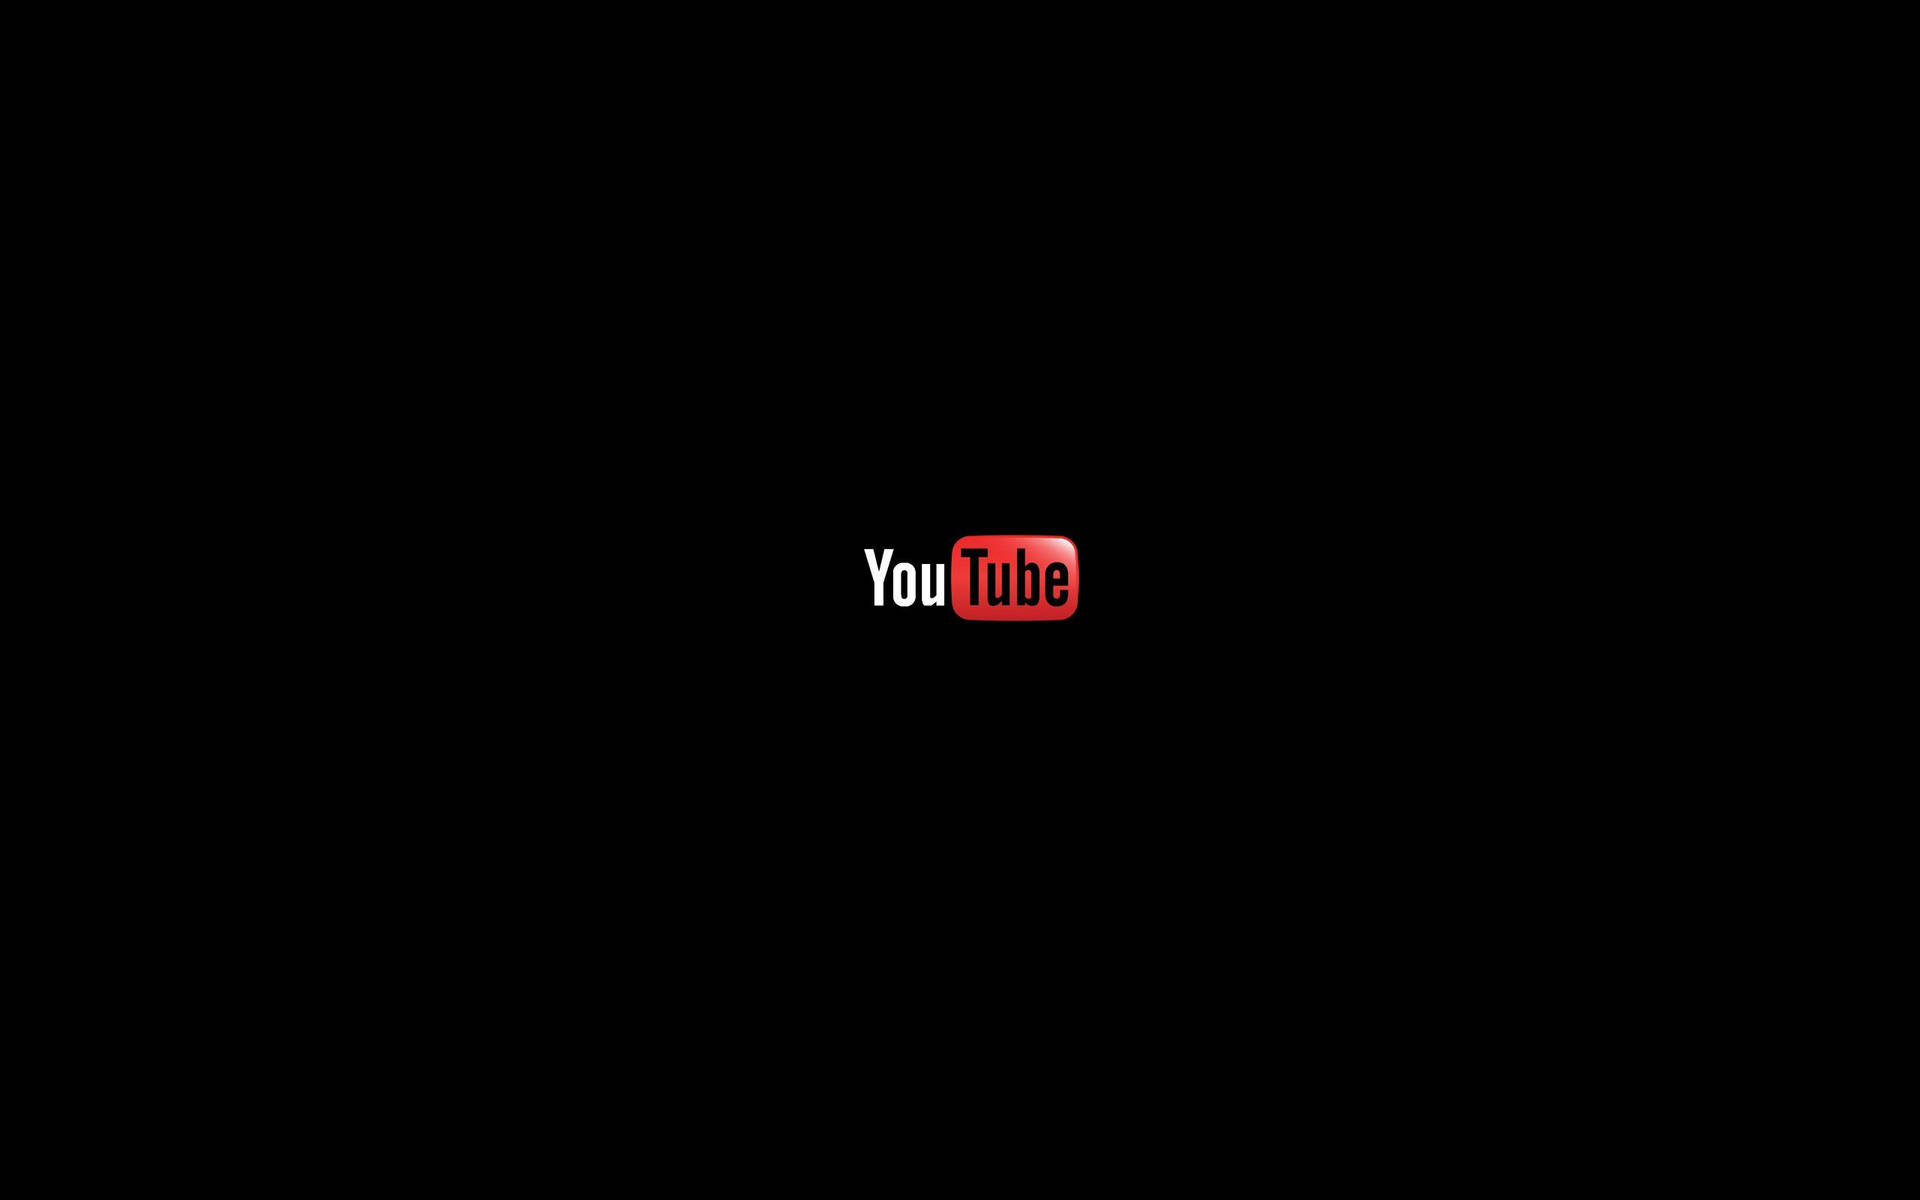 Aesthetic Youtube Minimalist Black Logo Background